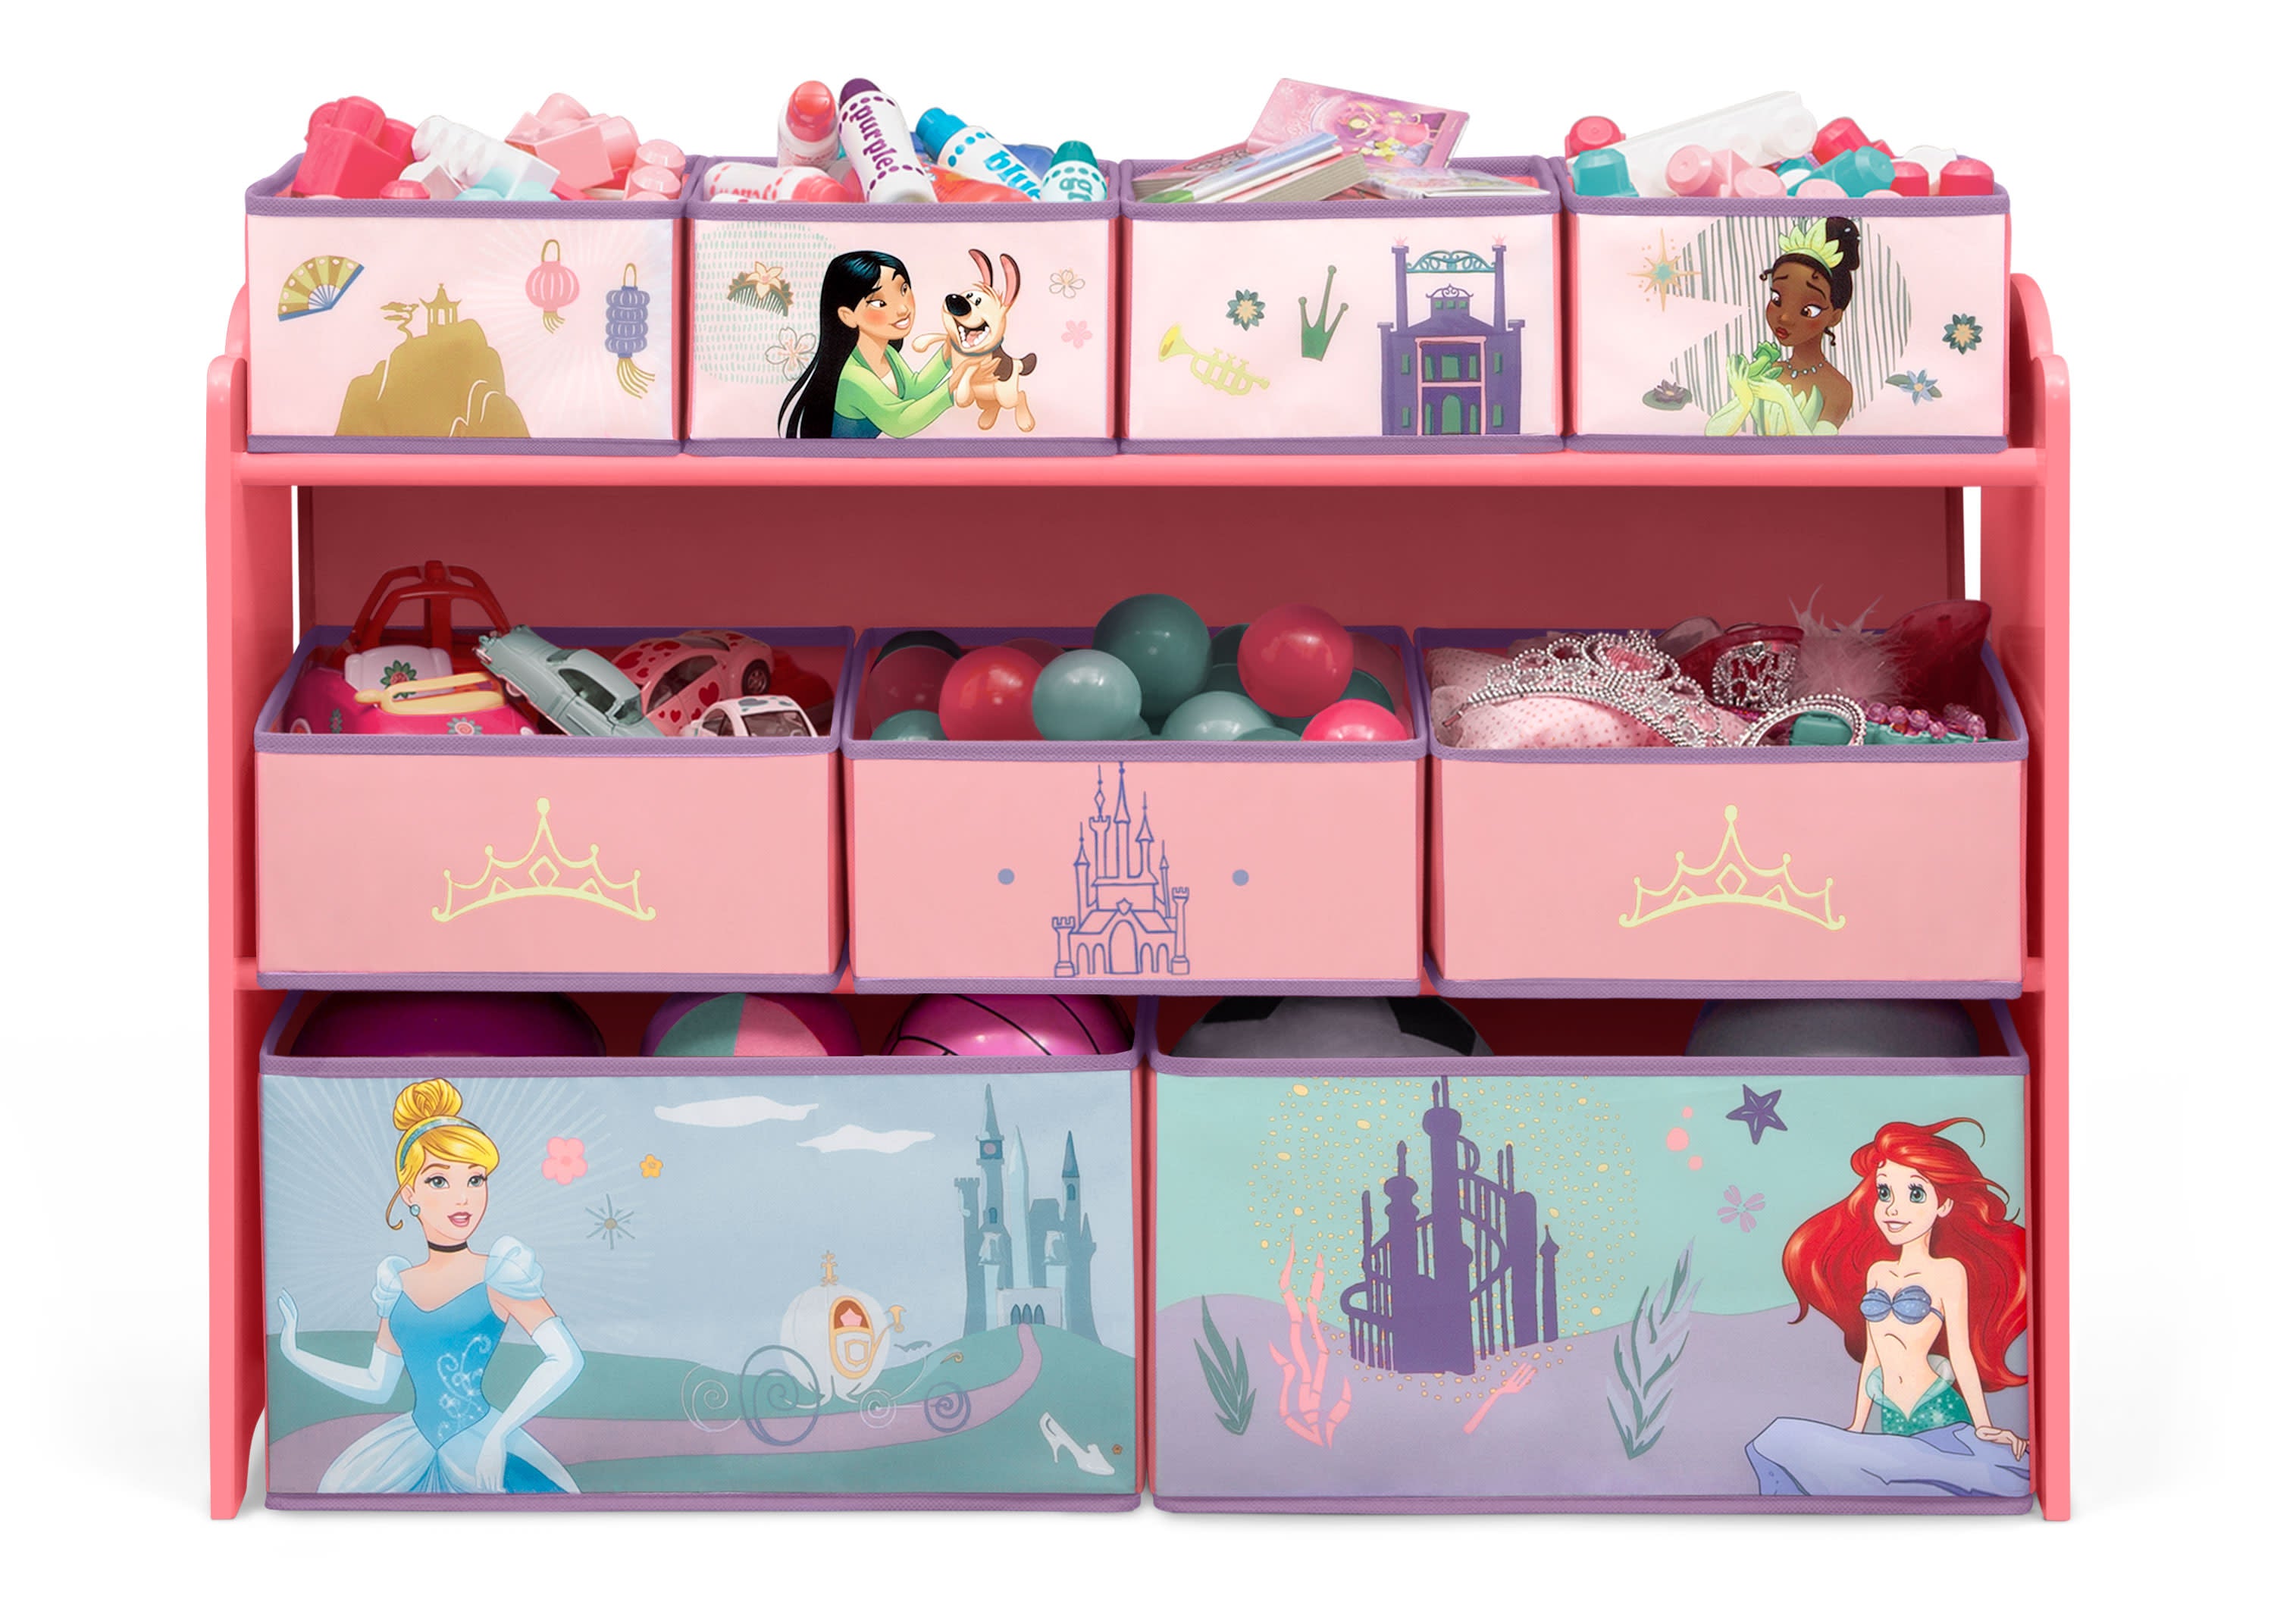 PrettyKrafts Barbie Toys Organizer, Storage Box for Kids, Small